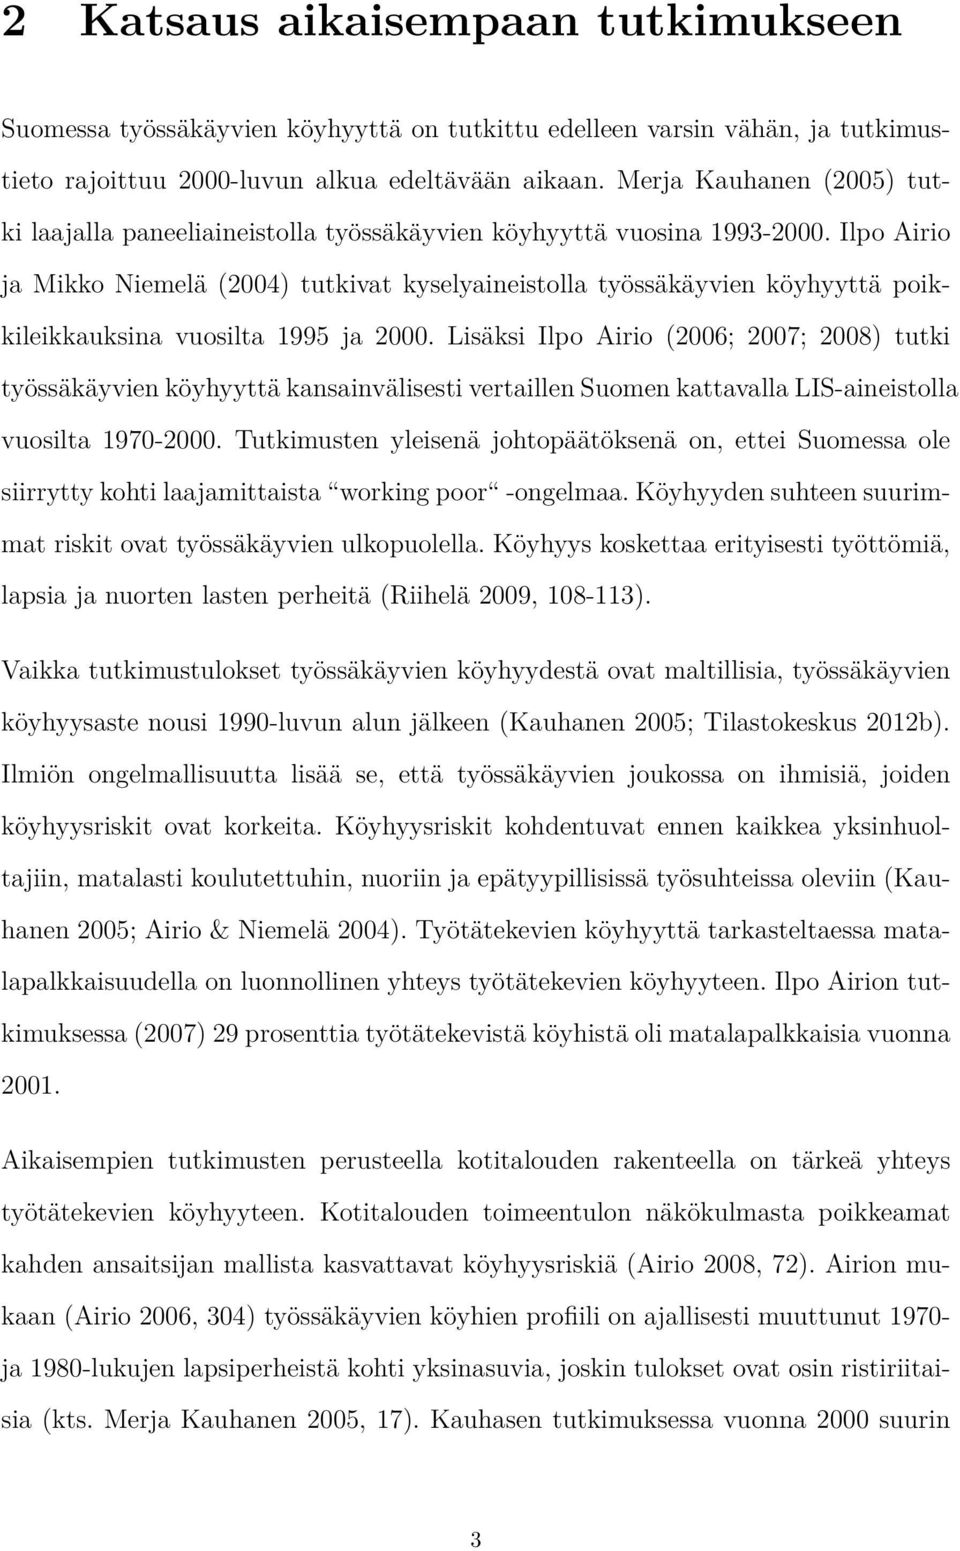 Ilpo Airio ja Mikko Niemelä (2004) tutkivat kyselyaineistolla työssäkäyvien köyhyyttä poikkileikkauksina vuosilta 1995 ja 2000.